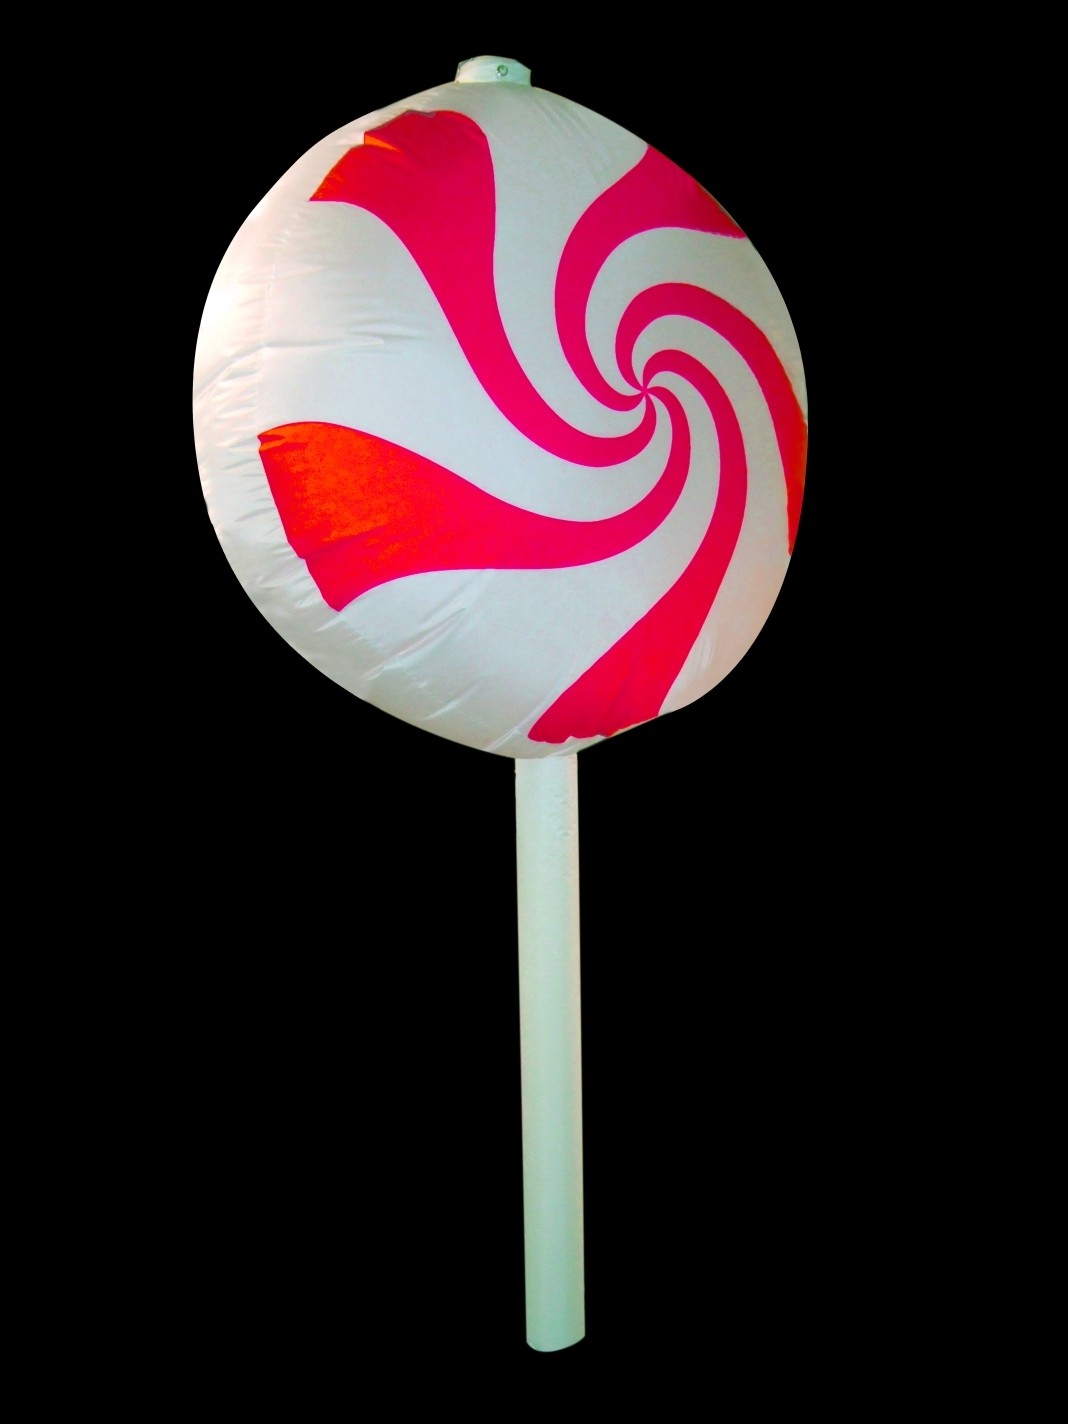 Hanging Inflatable Lollipop 4ft/122cm x 8ft/244cm